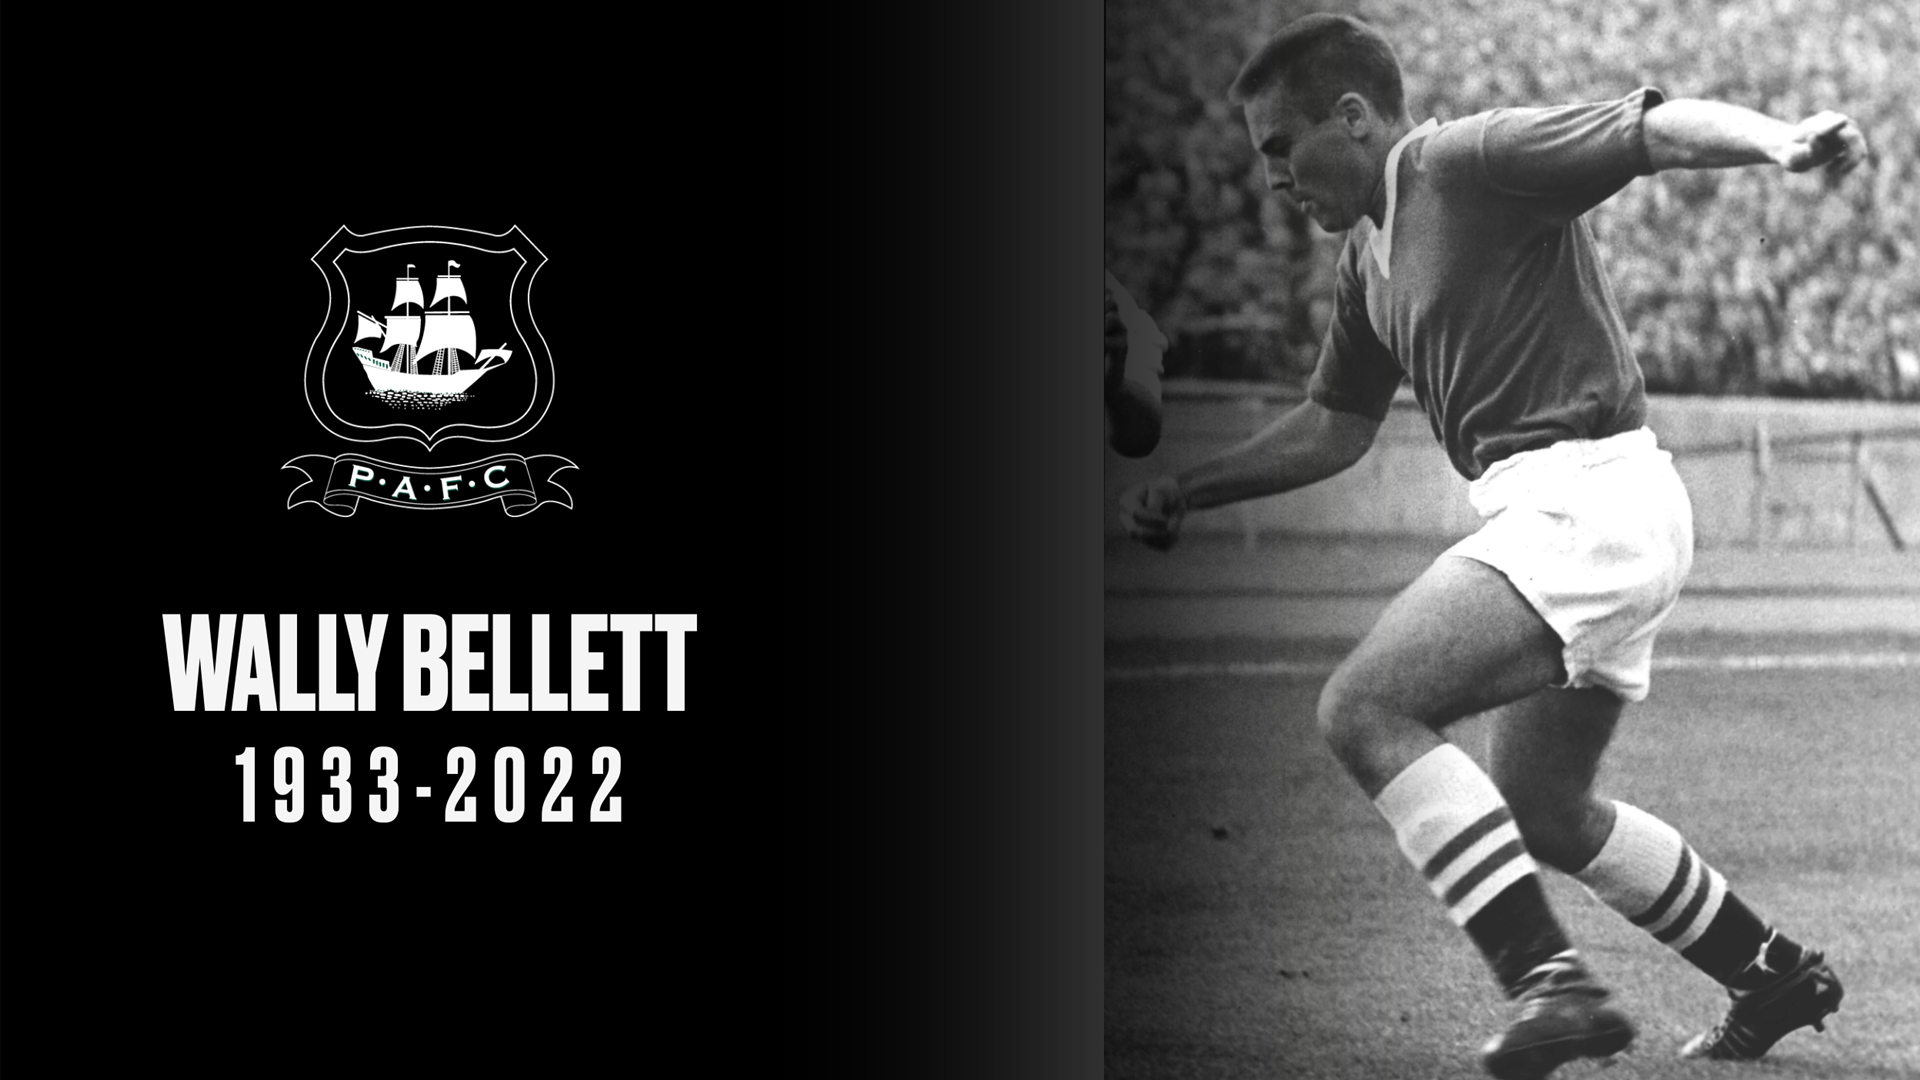 Wally Bellett RIP